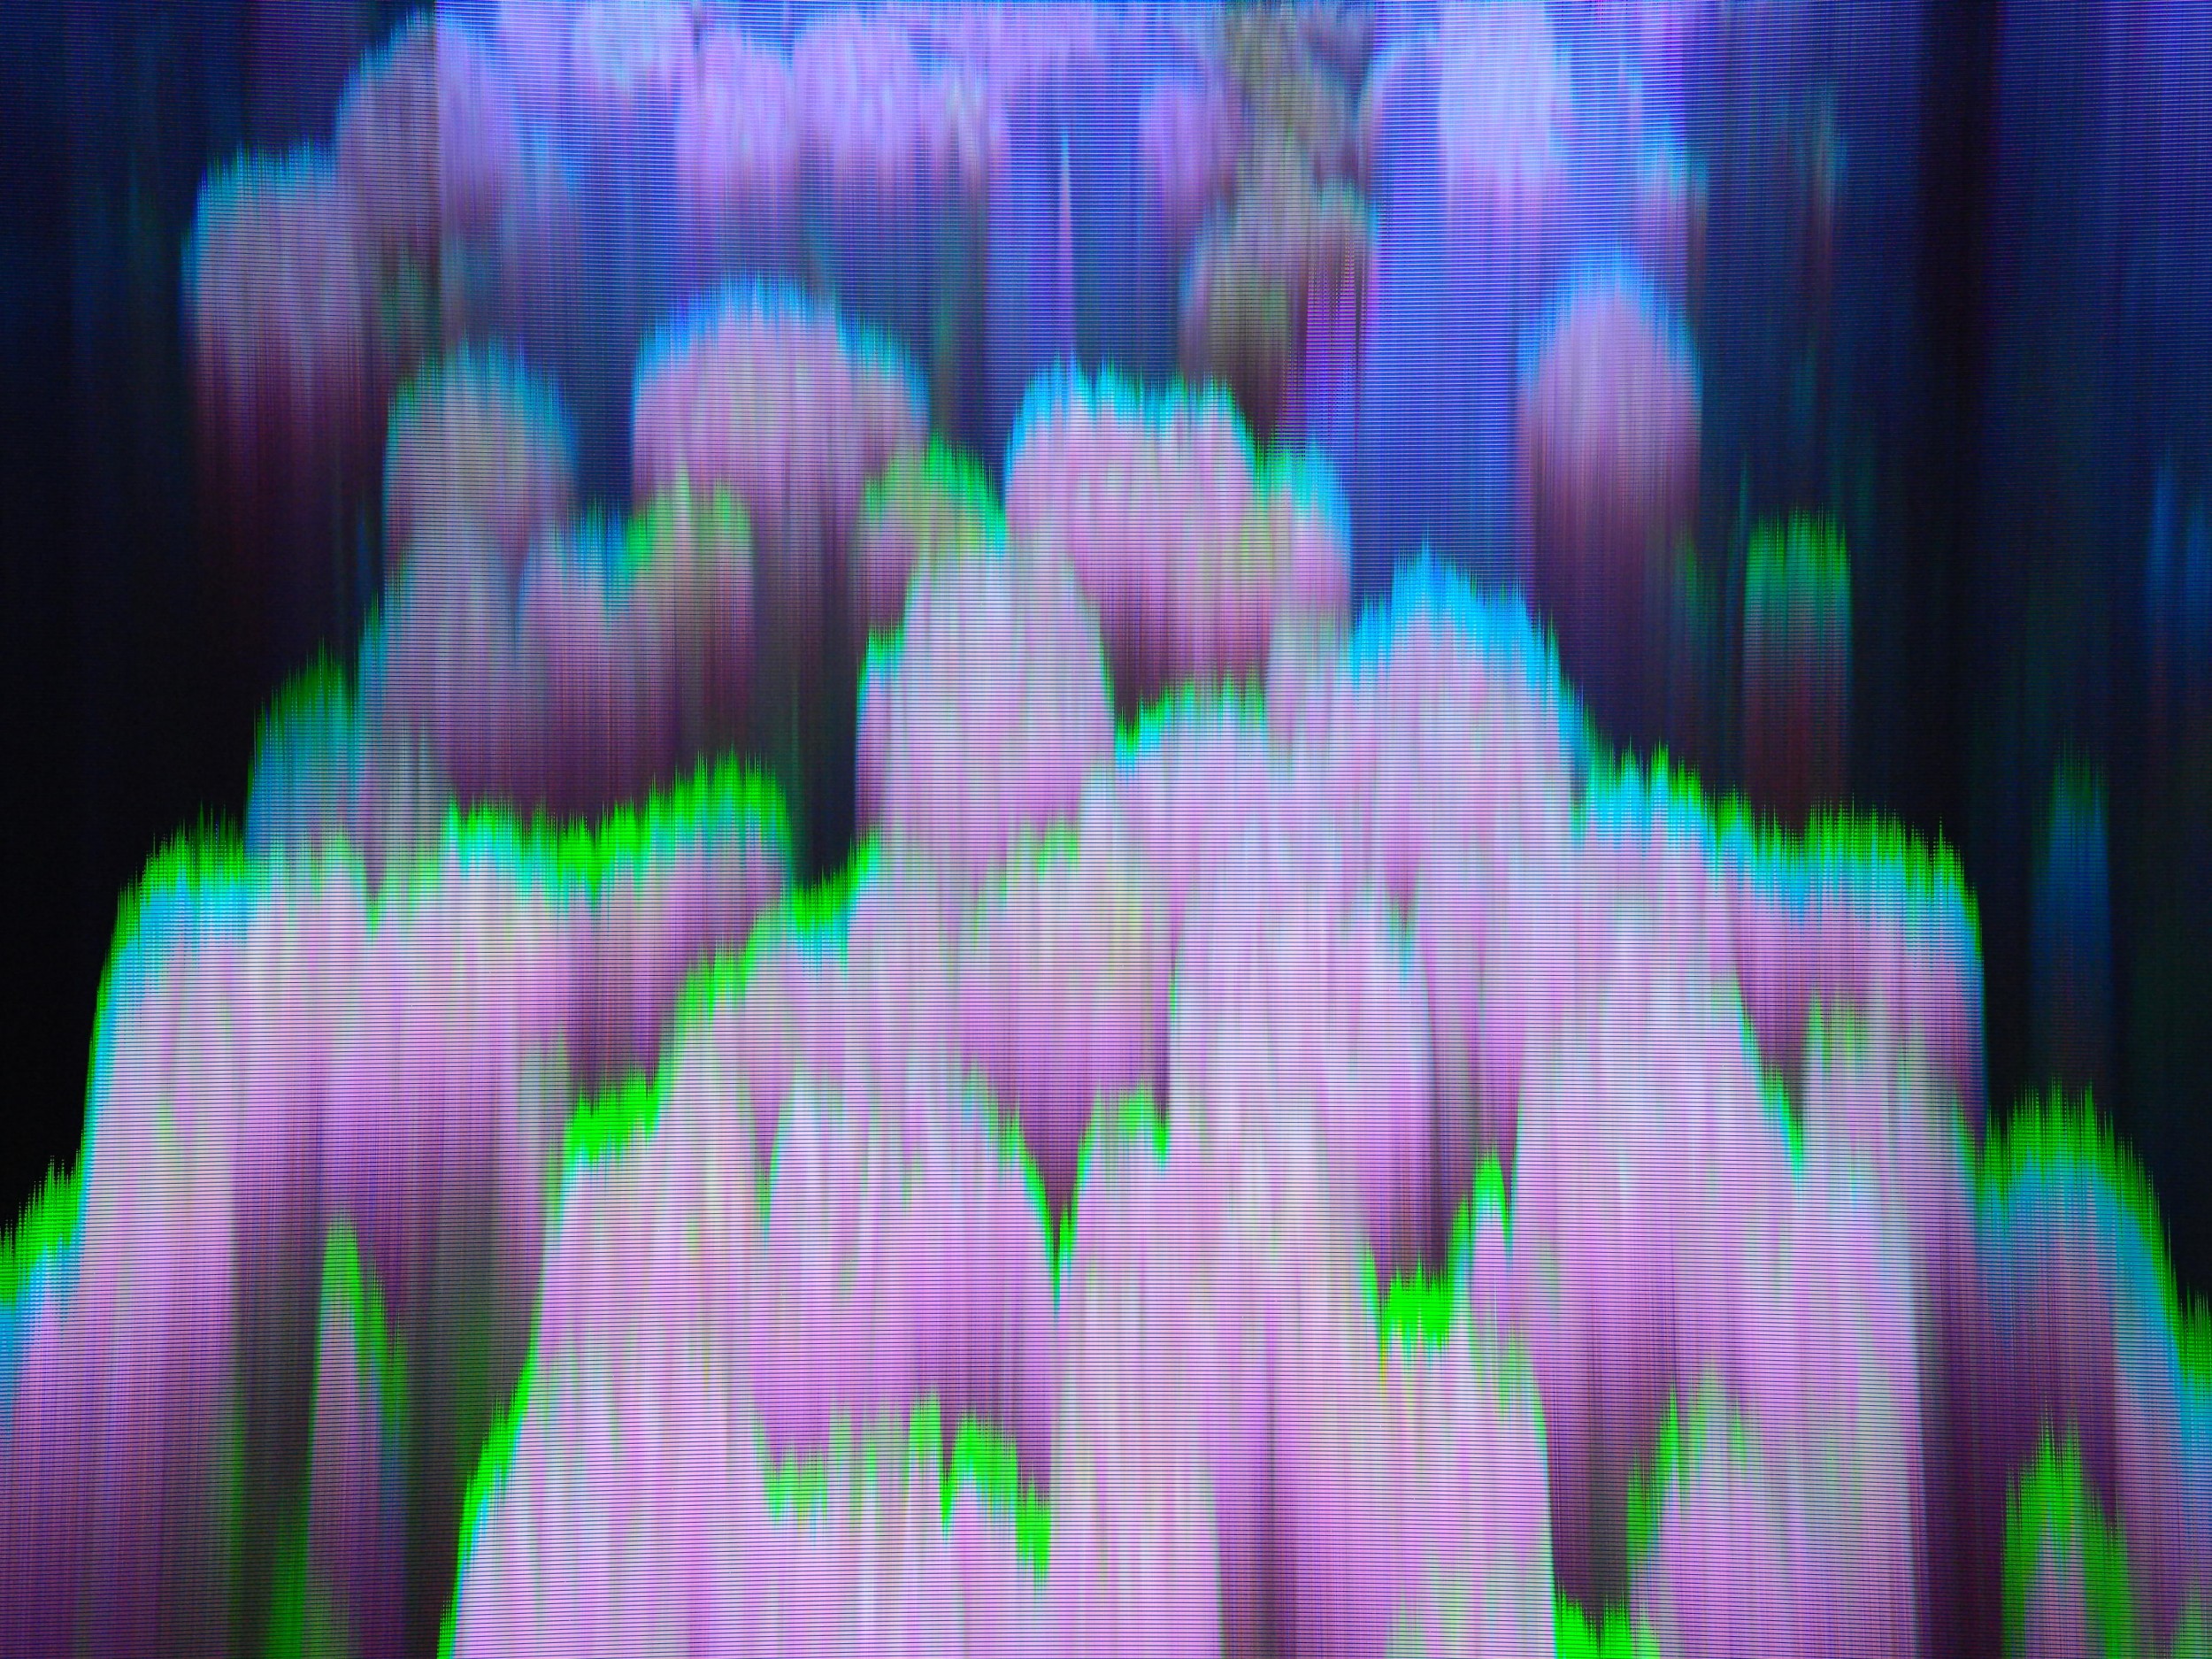 General 2500x1875 glitch art digital art blurred abstract